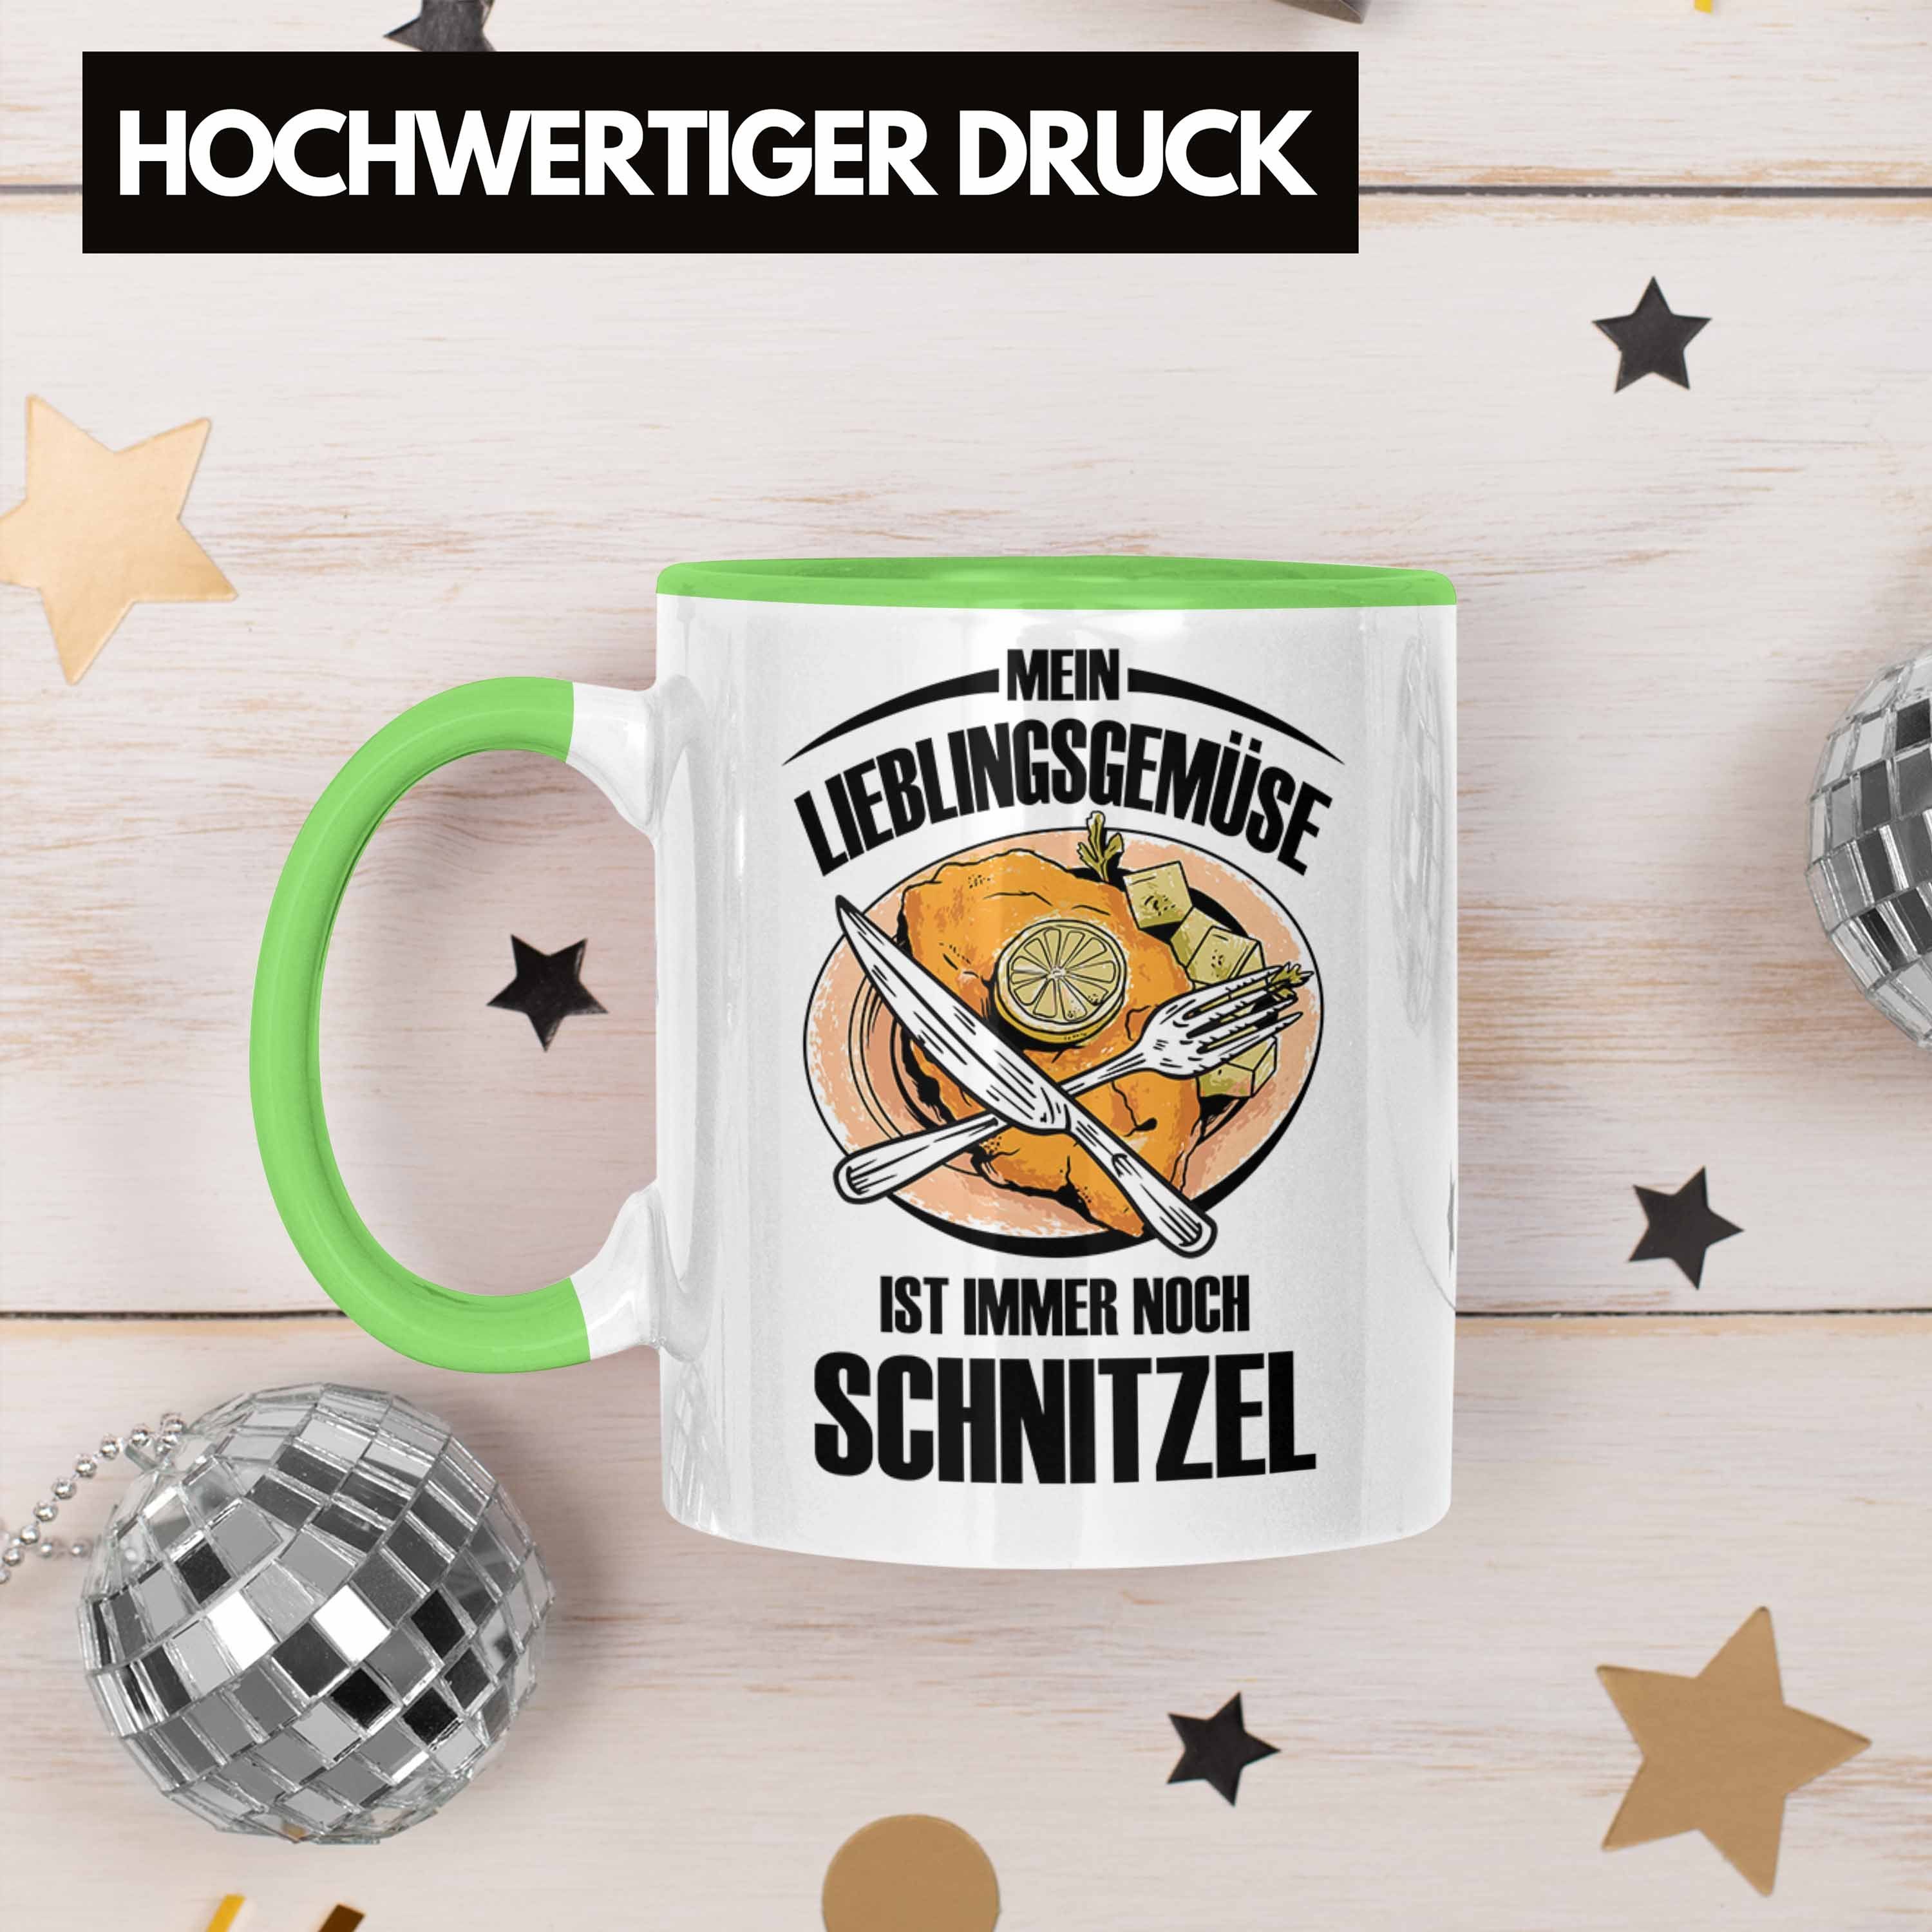 Trendation Tasse Schnitzel-Tasse Lieblingsgemüse für Mein Grün Schnitzel-Liebhaber Geschenk